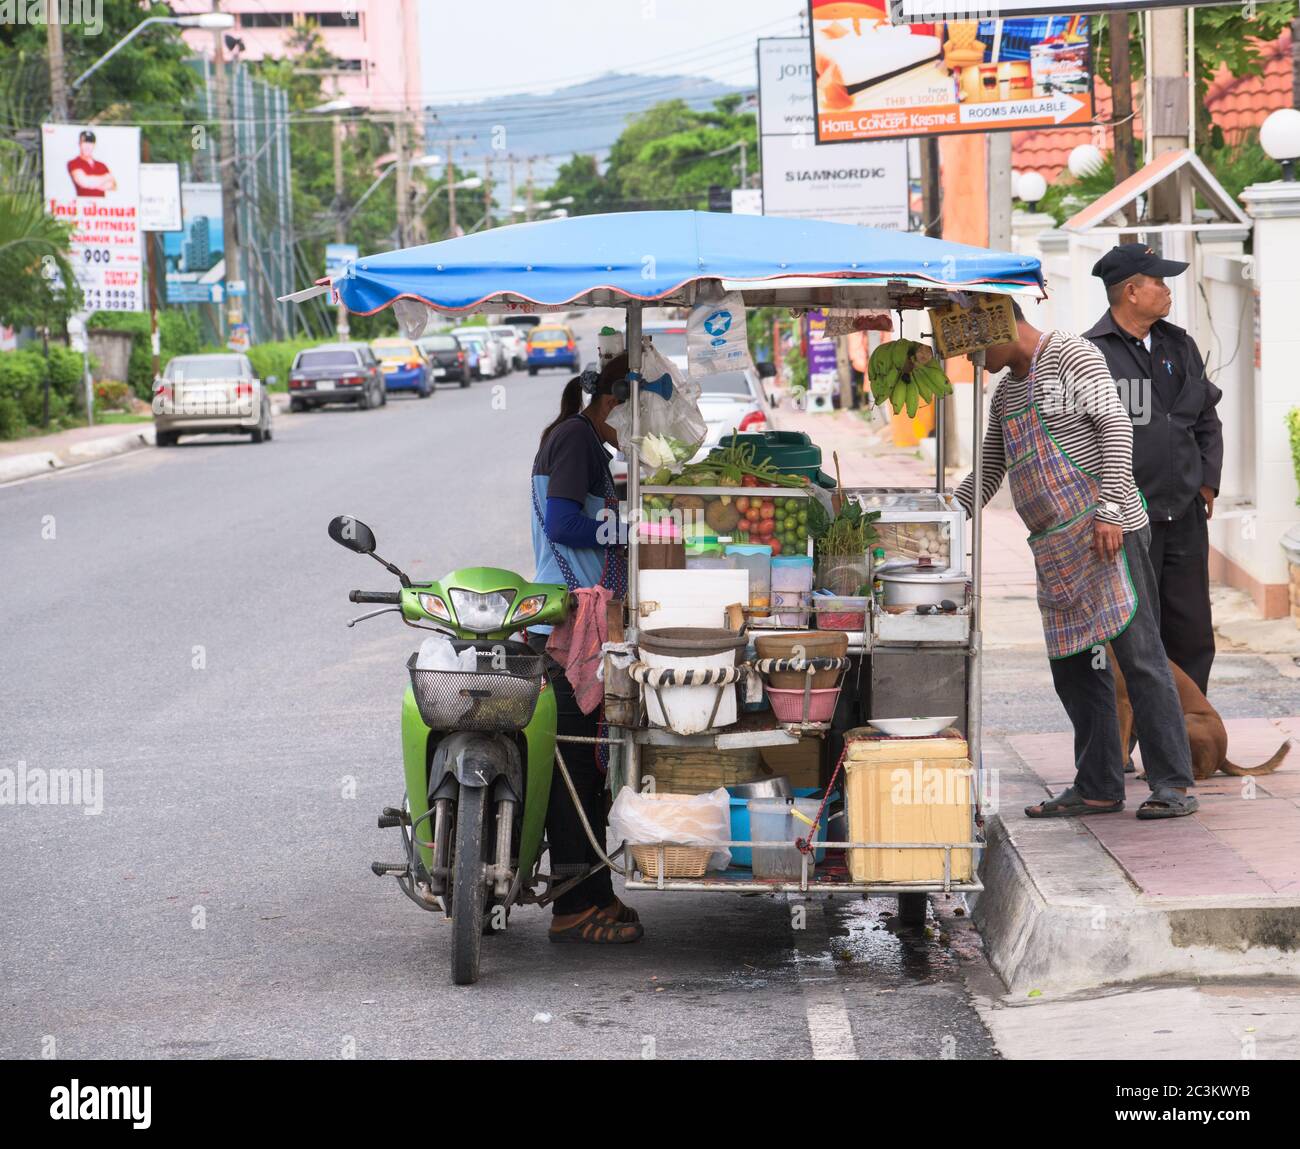 Pattaya City, Thaïlande - 26 juin 2015: La Thaïlande est célèbre pour sa cuisine de rue, qui est savoureuse et peut être achetée partout autour de la montre. Voici un Banque D'Images